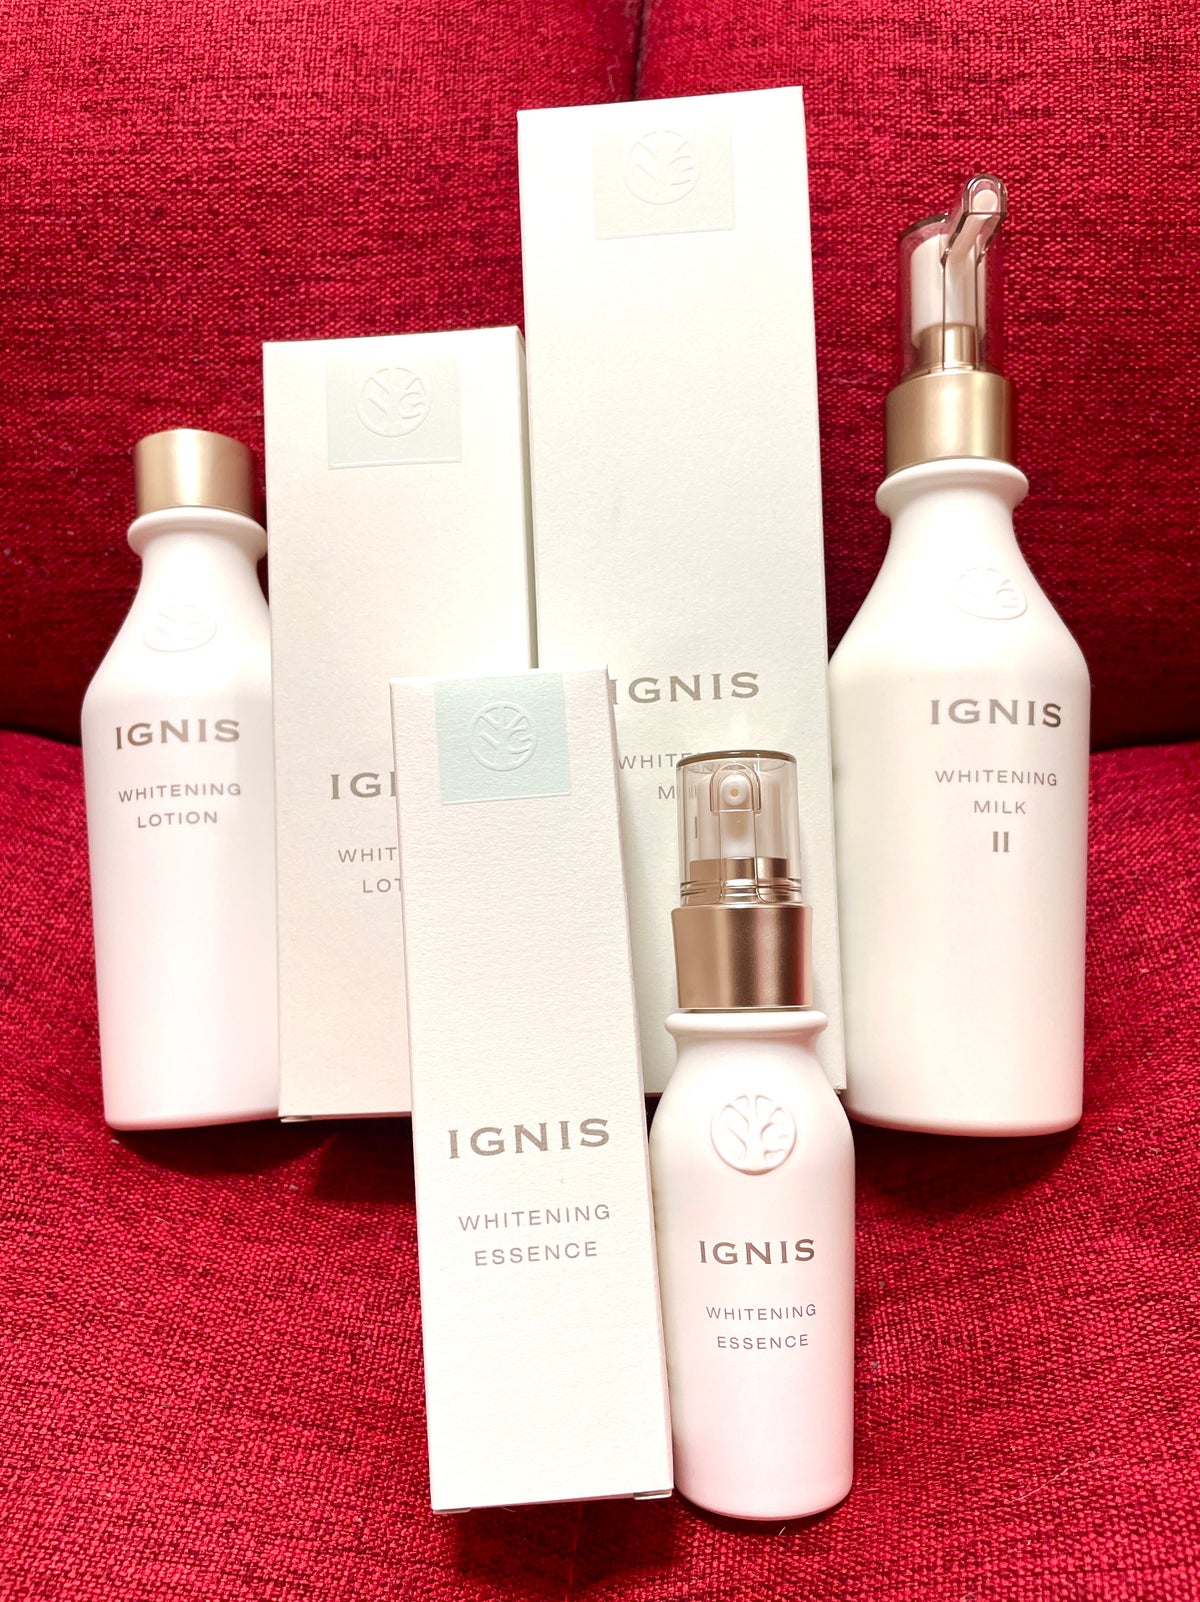 IGNISのスキンケア・基礎化粧品 ホワイトニング ミルク II他、3商品を